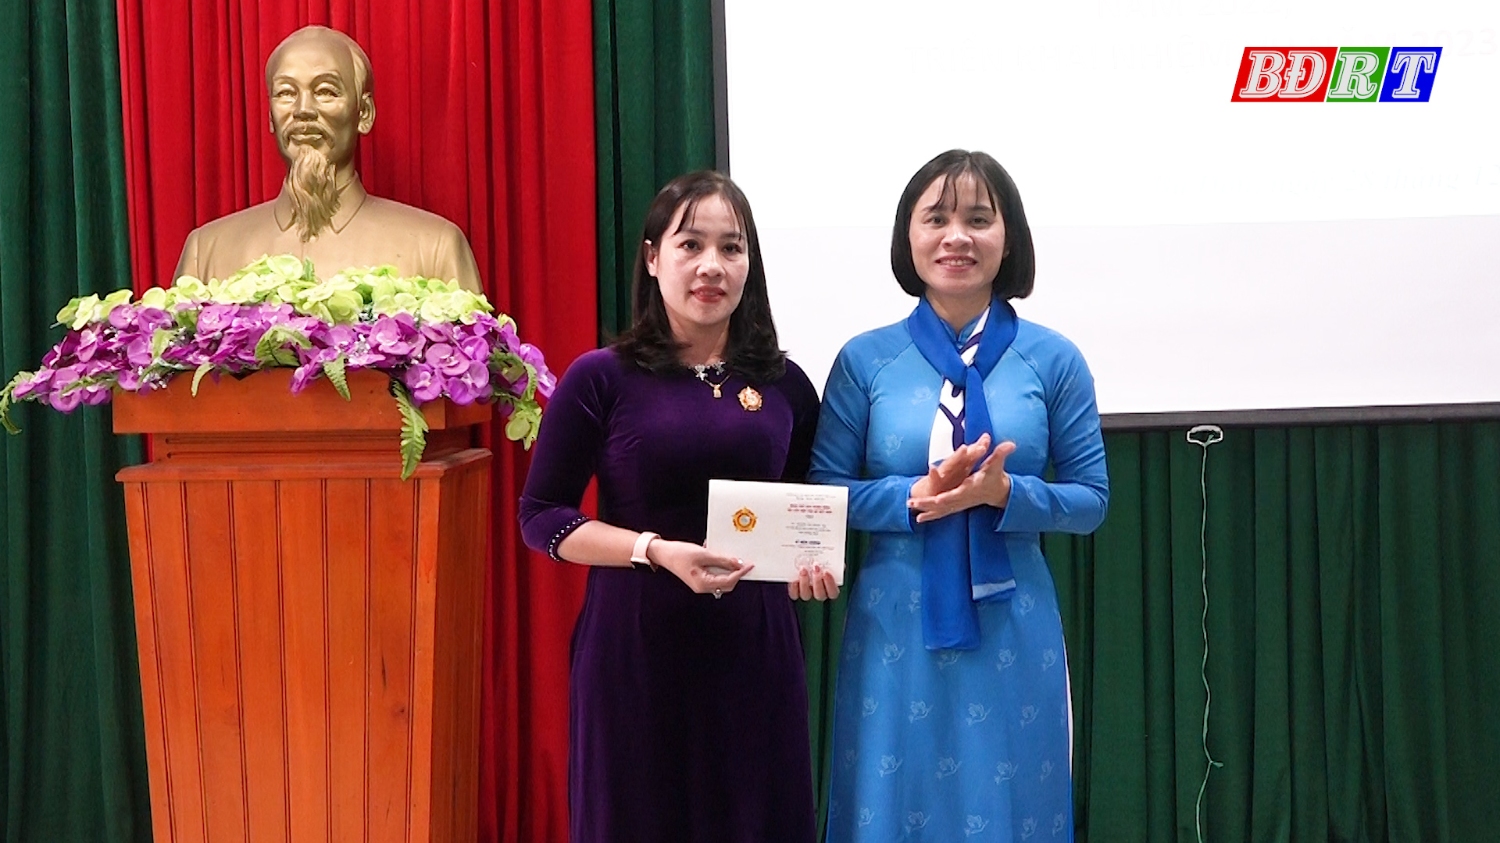 Cá nhân vinh dự được nhận Kỷ niệm chương Vì sự phát triển của phụ nữ Việt Nam”